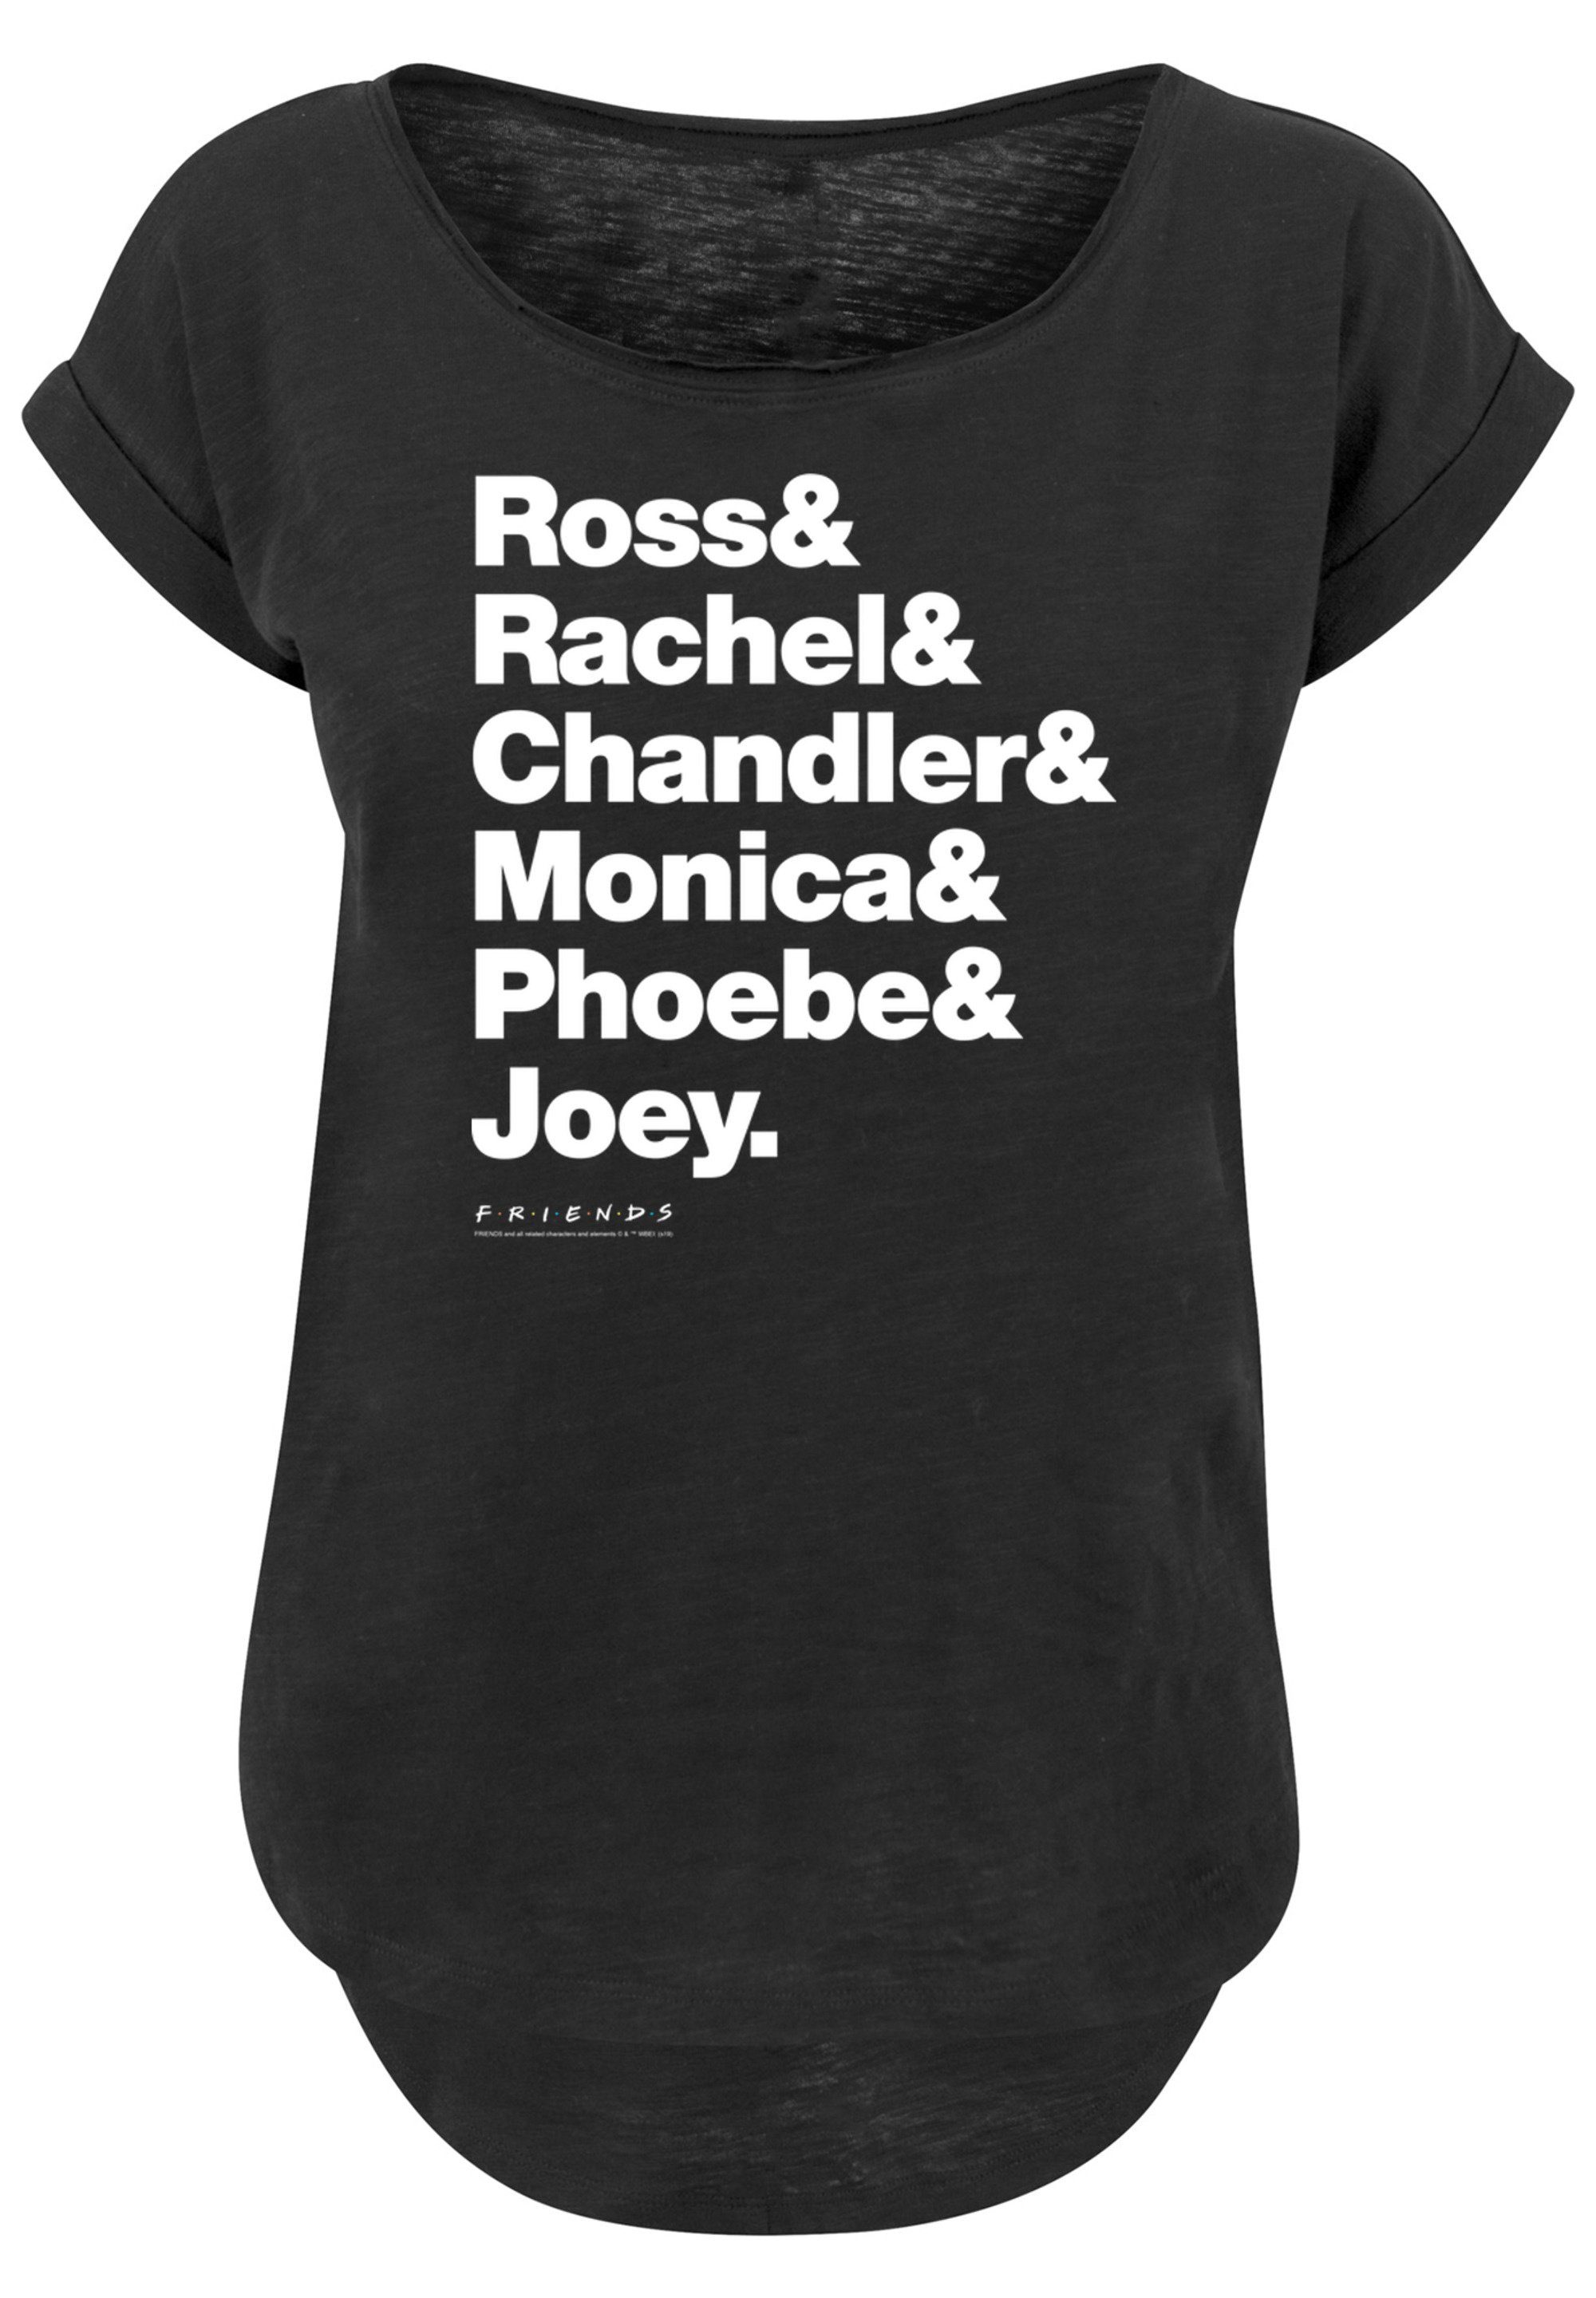 & Phoebe Print, & Tragekomfort & Rachel Chandler Monica F4NT4STIC Joey Sehr hohem weicher Ross & & mit T-Shirt FRIENDS Baumwollstoff